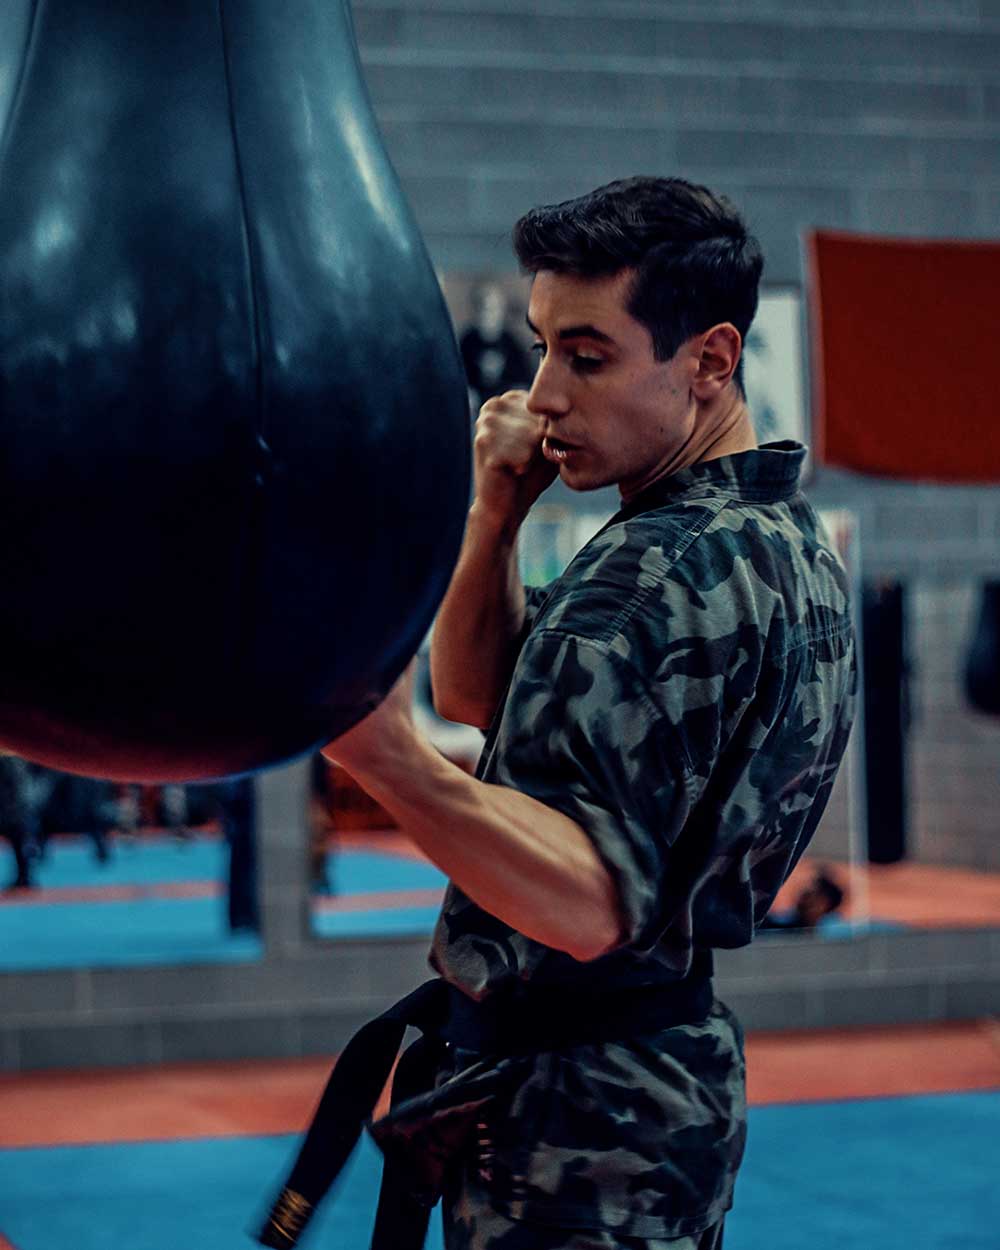 Krav Maga Training Luca Arietti punching workout at the bag | FOTO | PHOTOS